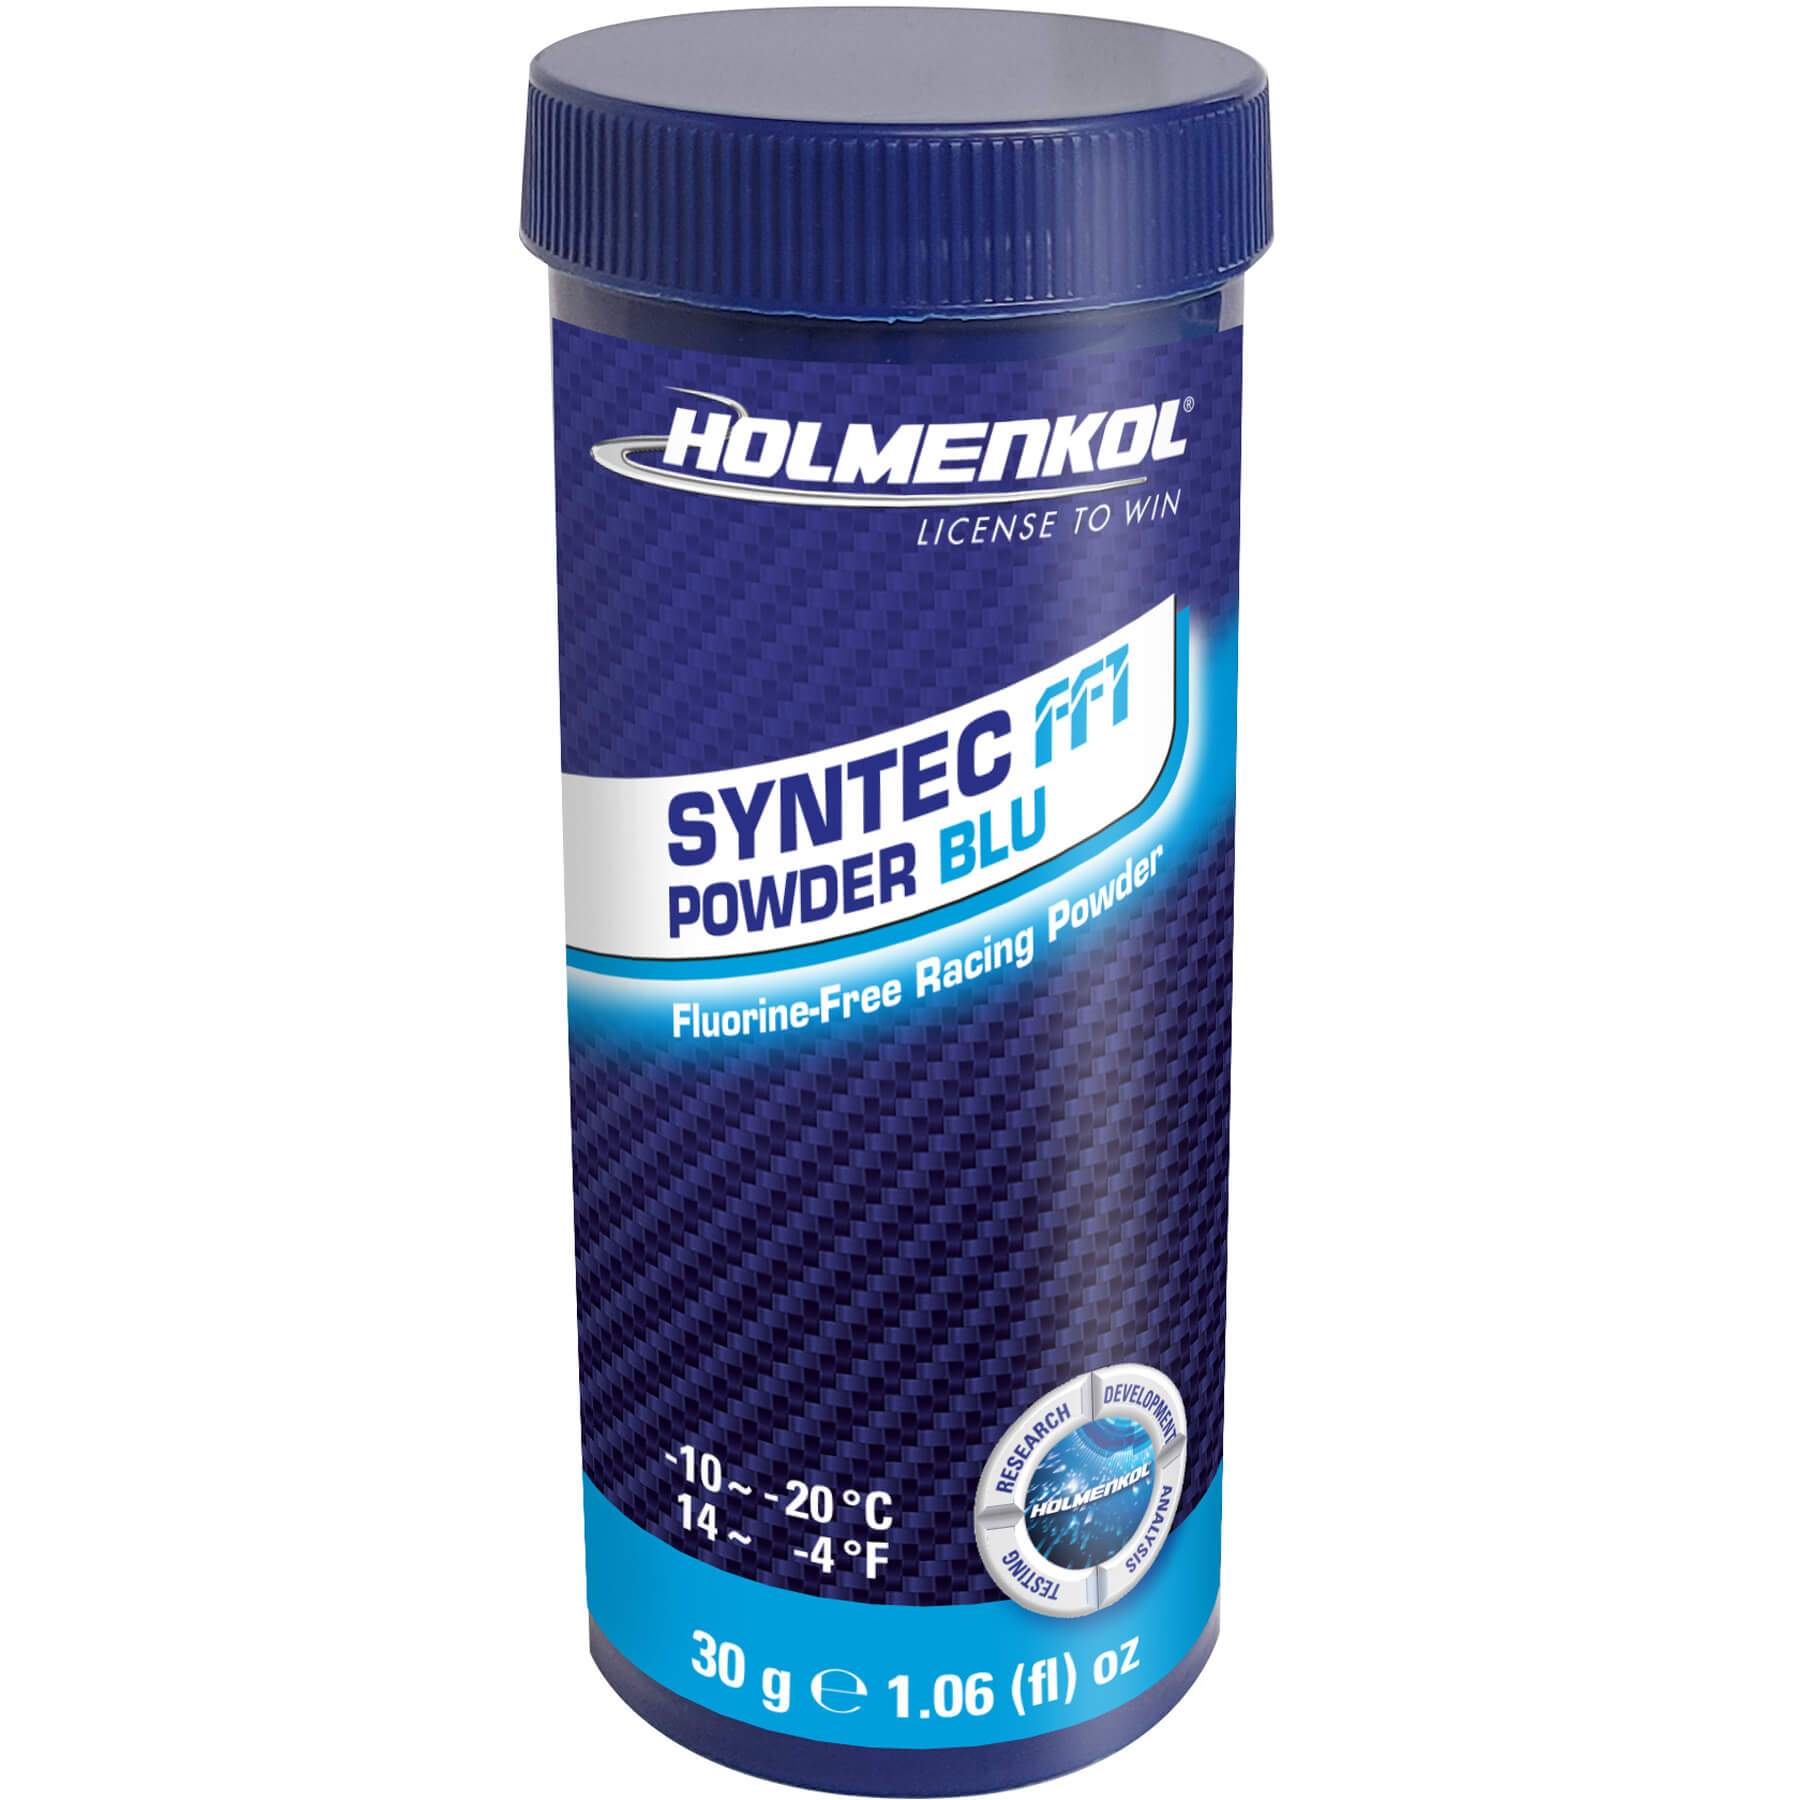 Buy blue Holmenkol Syntec FF1 Powder 30g